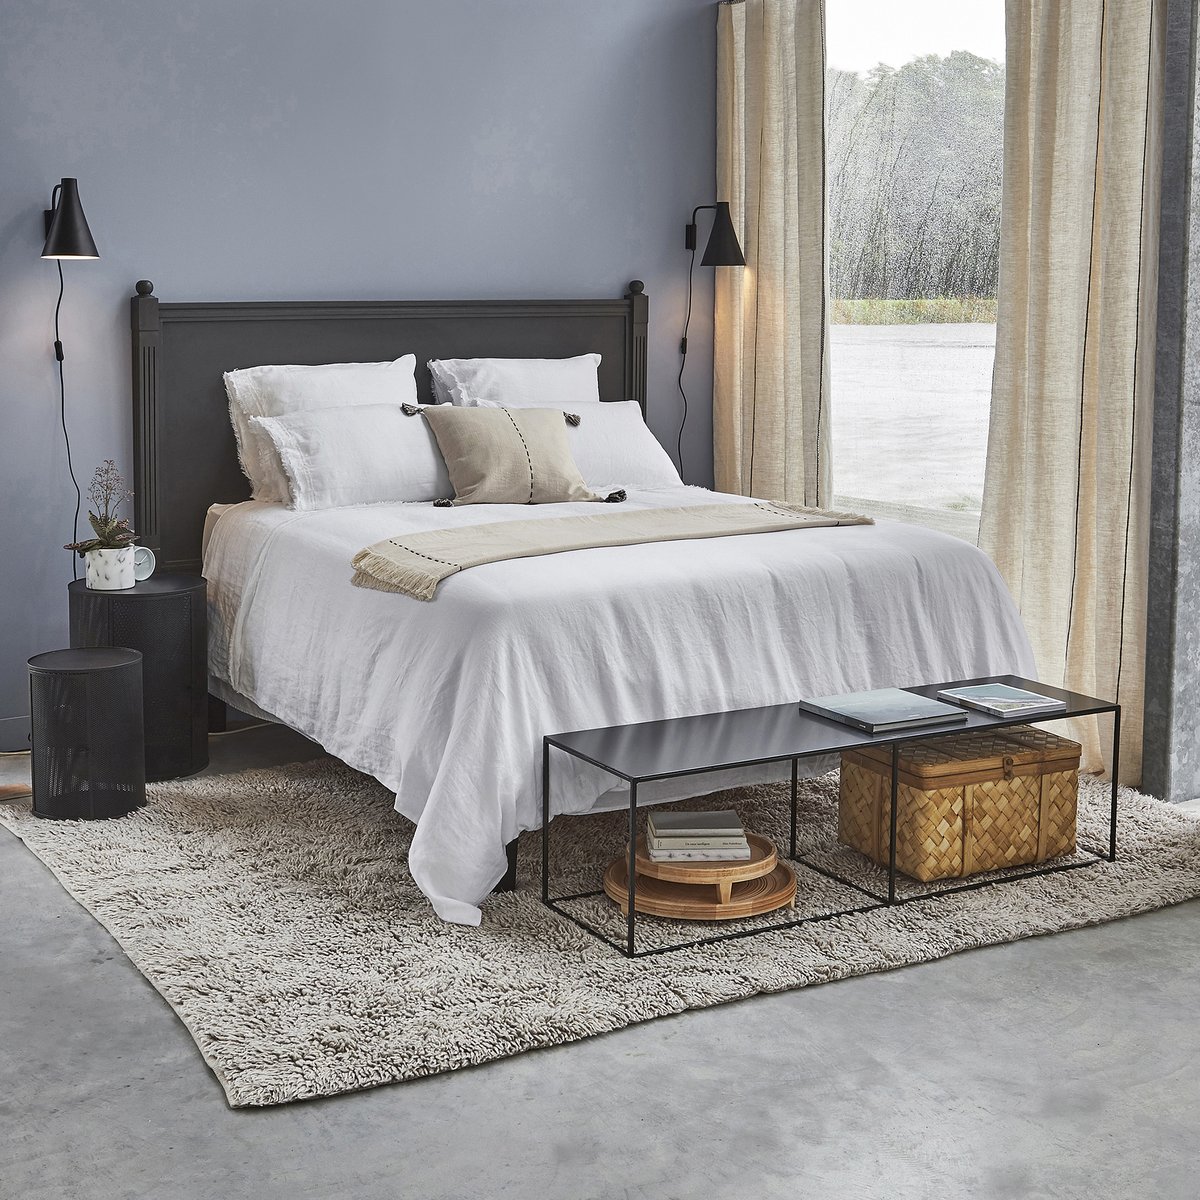 Чехол La Redoute Для кровати  льна 90 x 190 см серый, размер 90 x 190 см - фото 2